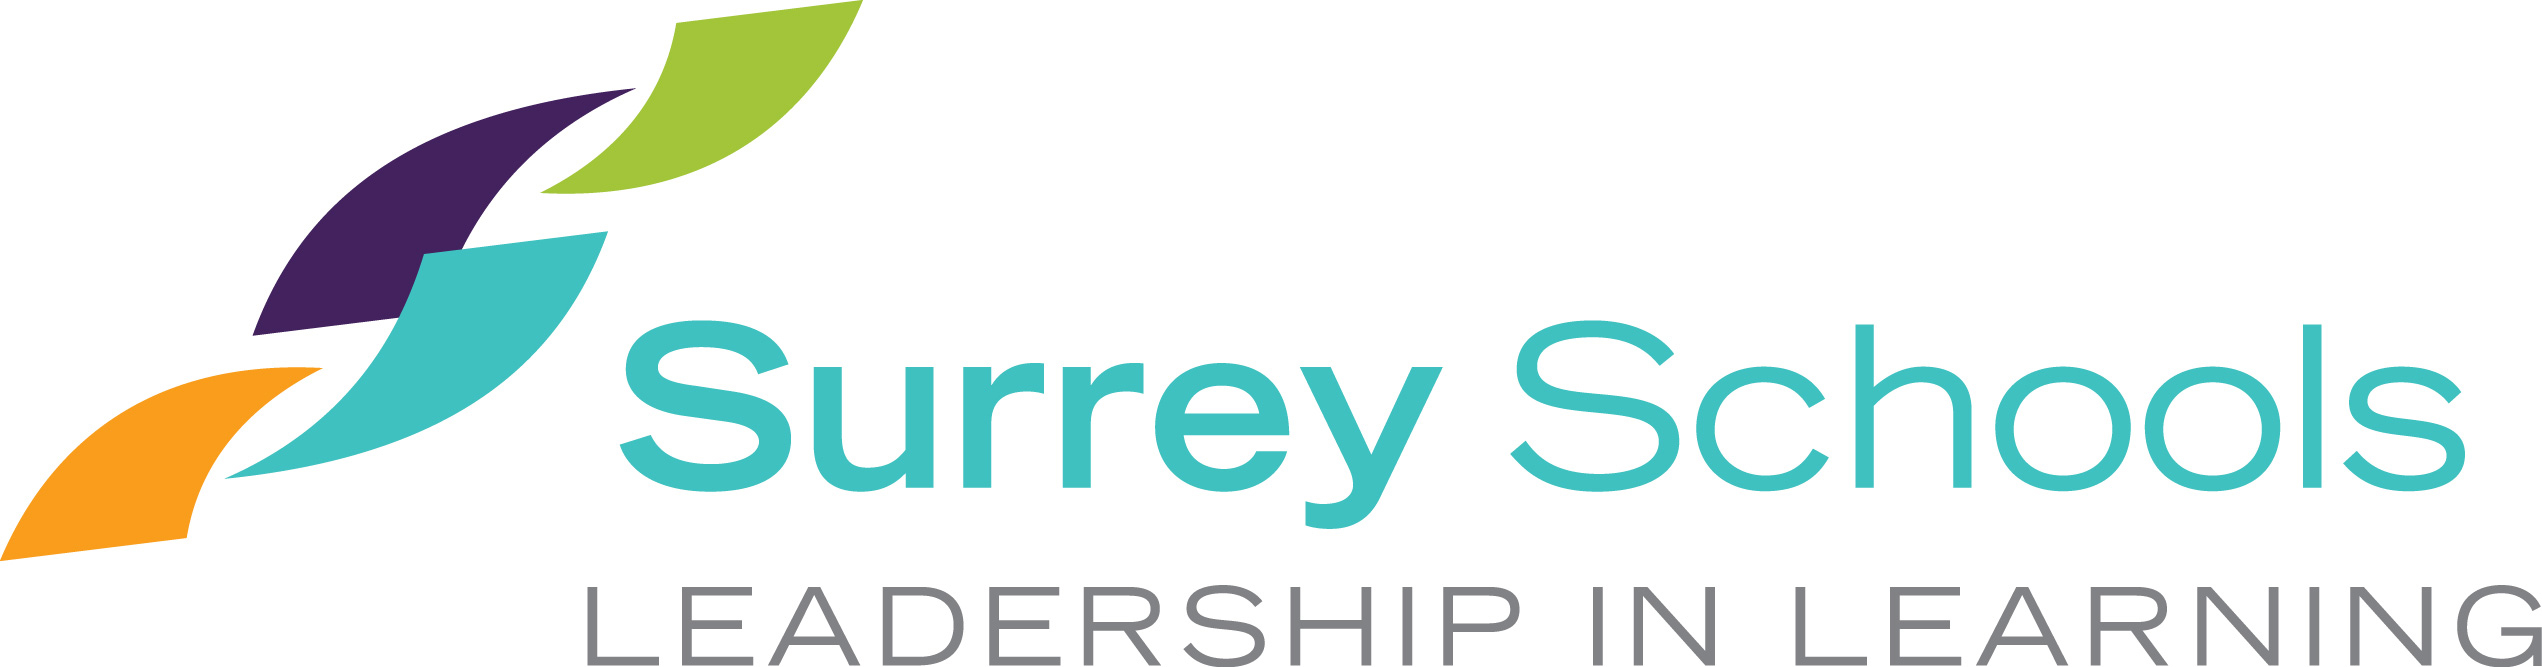 surrey-schools-logo.26f586136405.jpg